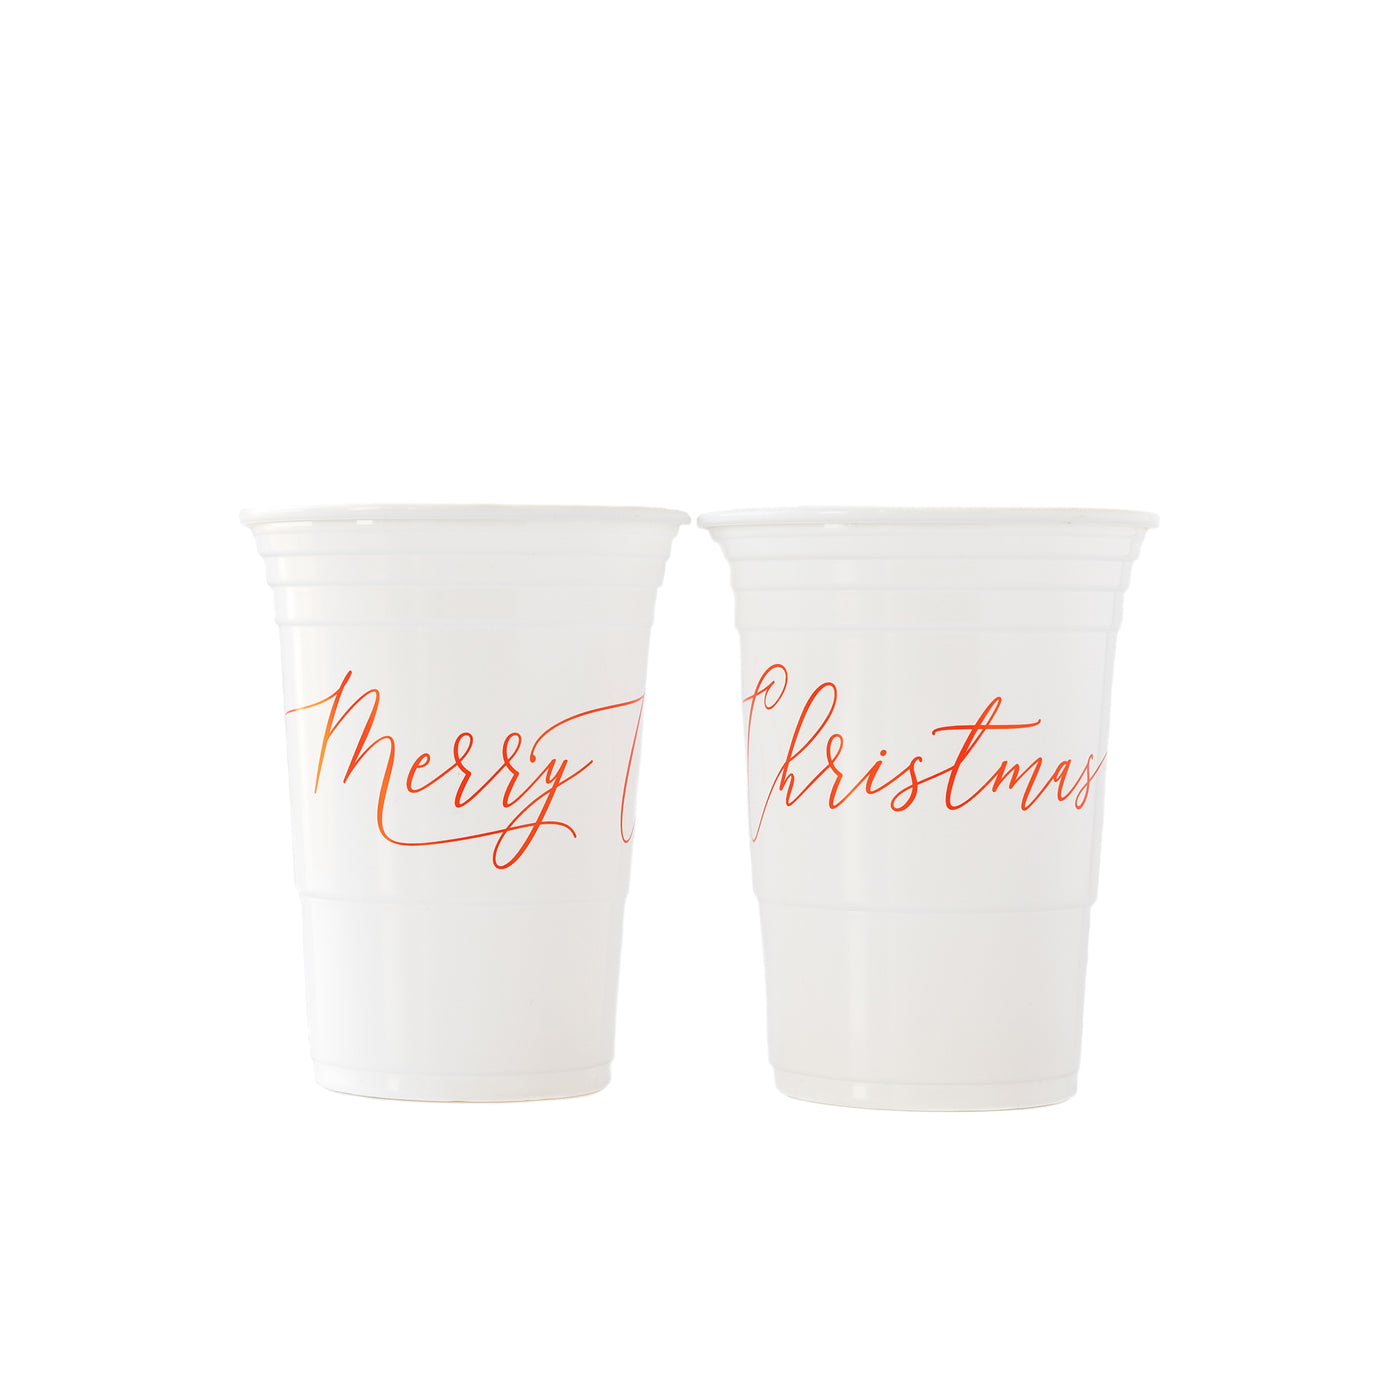 PLTC29 - Merry 16 oz Plastic Cups (24 pcs)